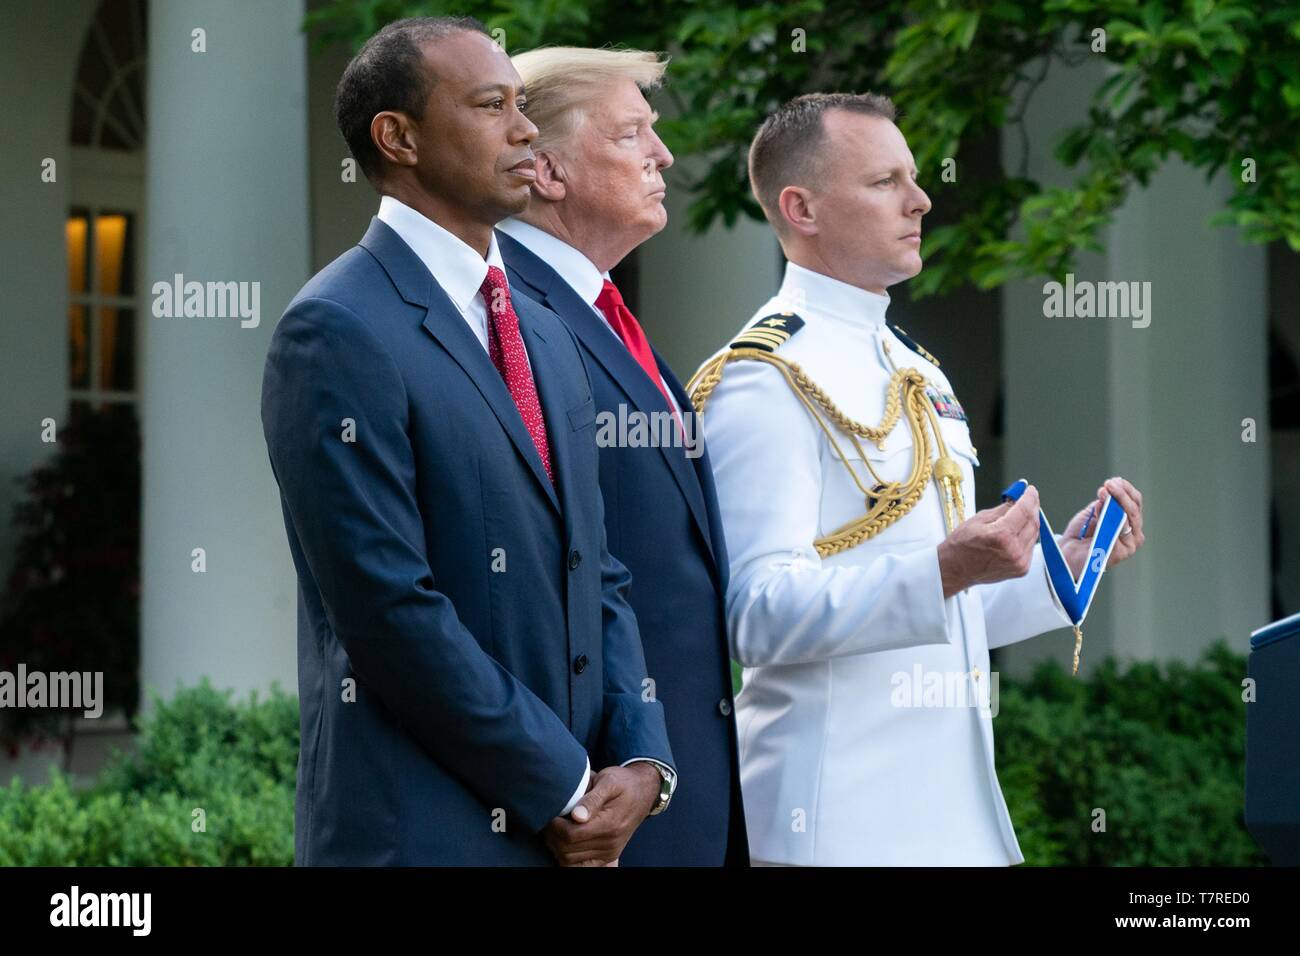 Président américain Donald Trump se tient avec le golfeur Tiger Woods durant la présentation de la Médaille présidentielle de la liberté dans la roseraie de la Maison Blanche le 6 mai 2019 à Washington, DC. Banque D'Images